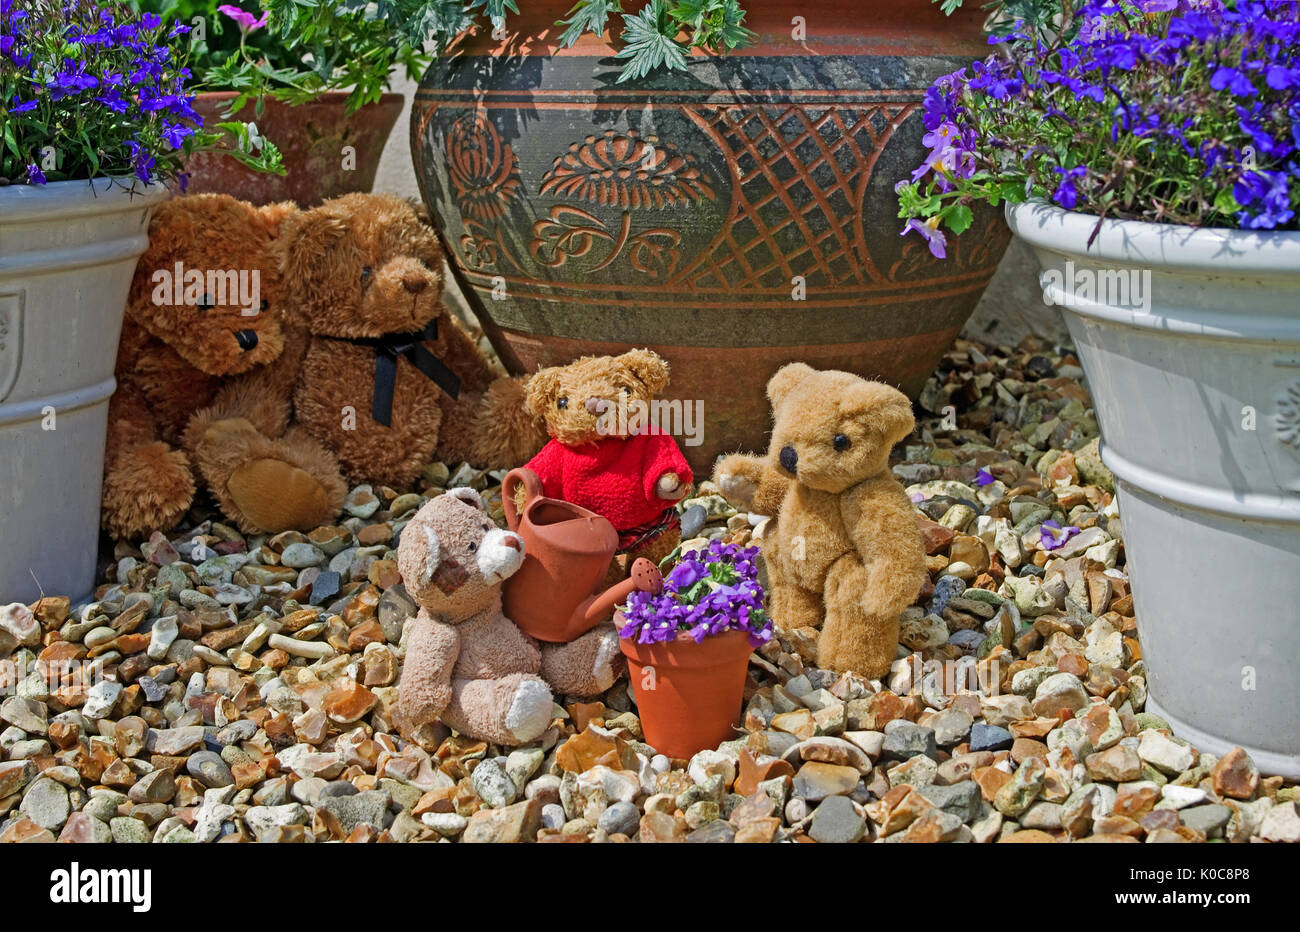 Jardín tableau de 3 pequeños teddies mini regar una maceta de barro con mini regadera, observados en el fondo por 2 grandes osos de peluche. Foto de stock